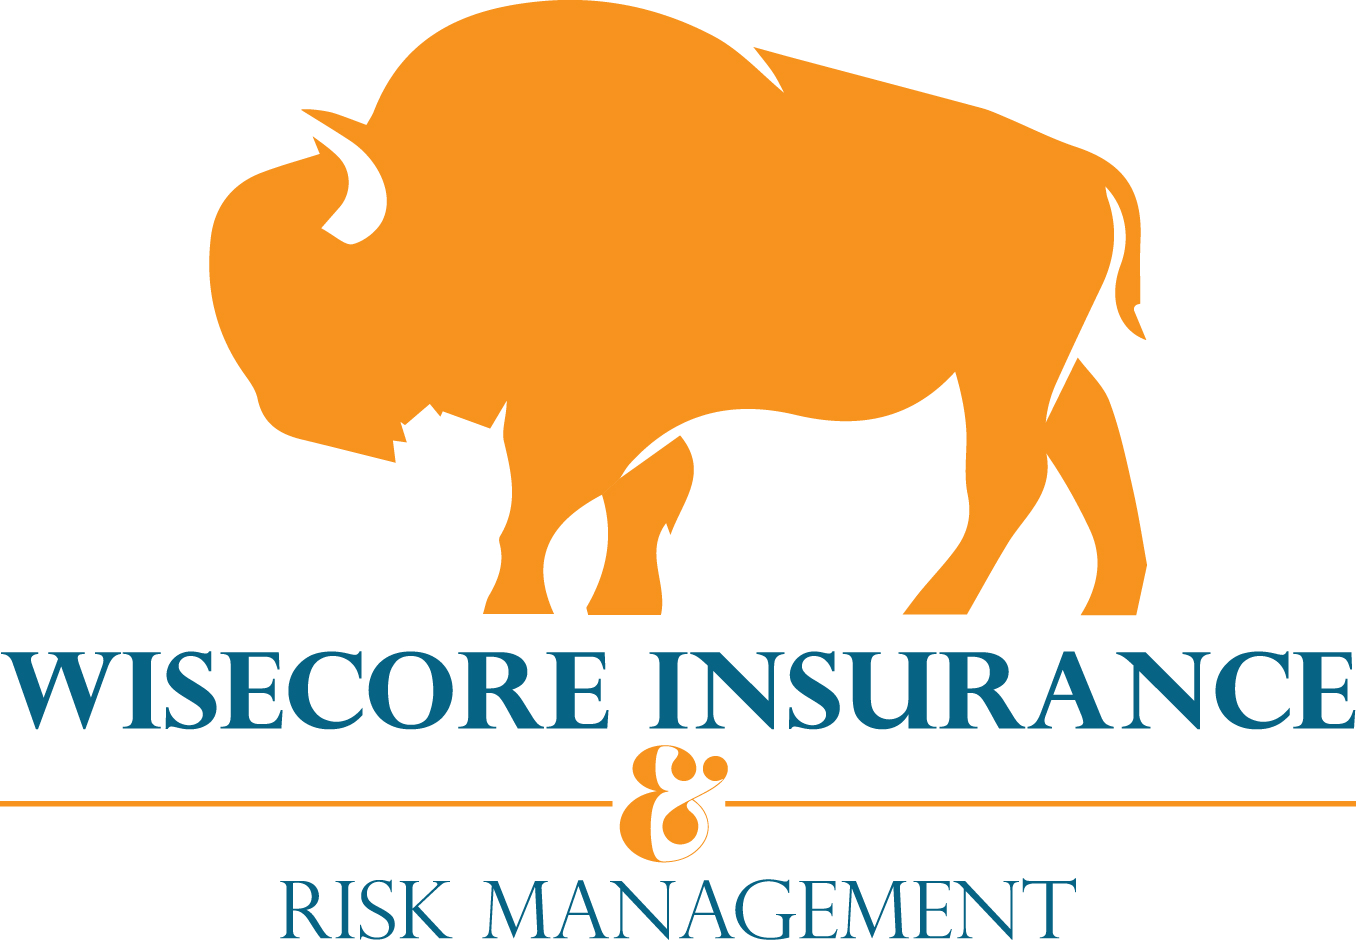 Wisecore Insurance